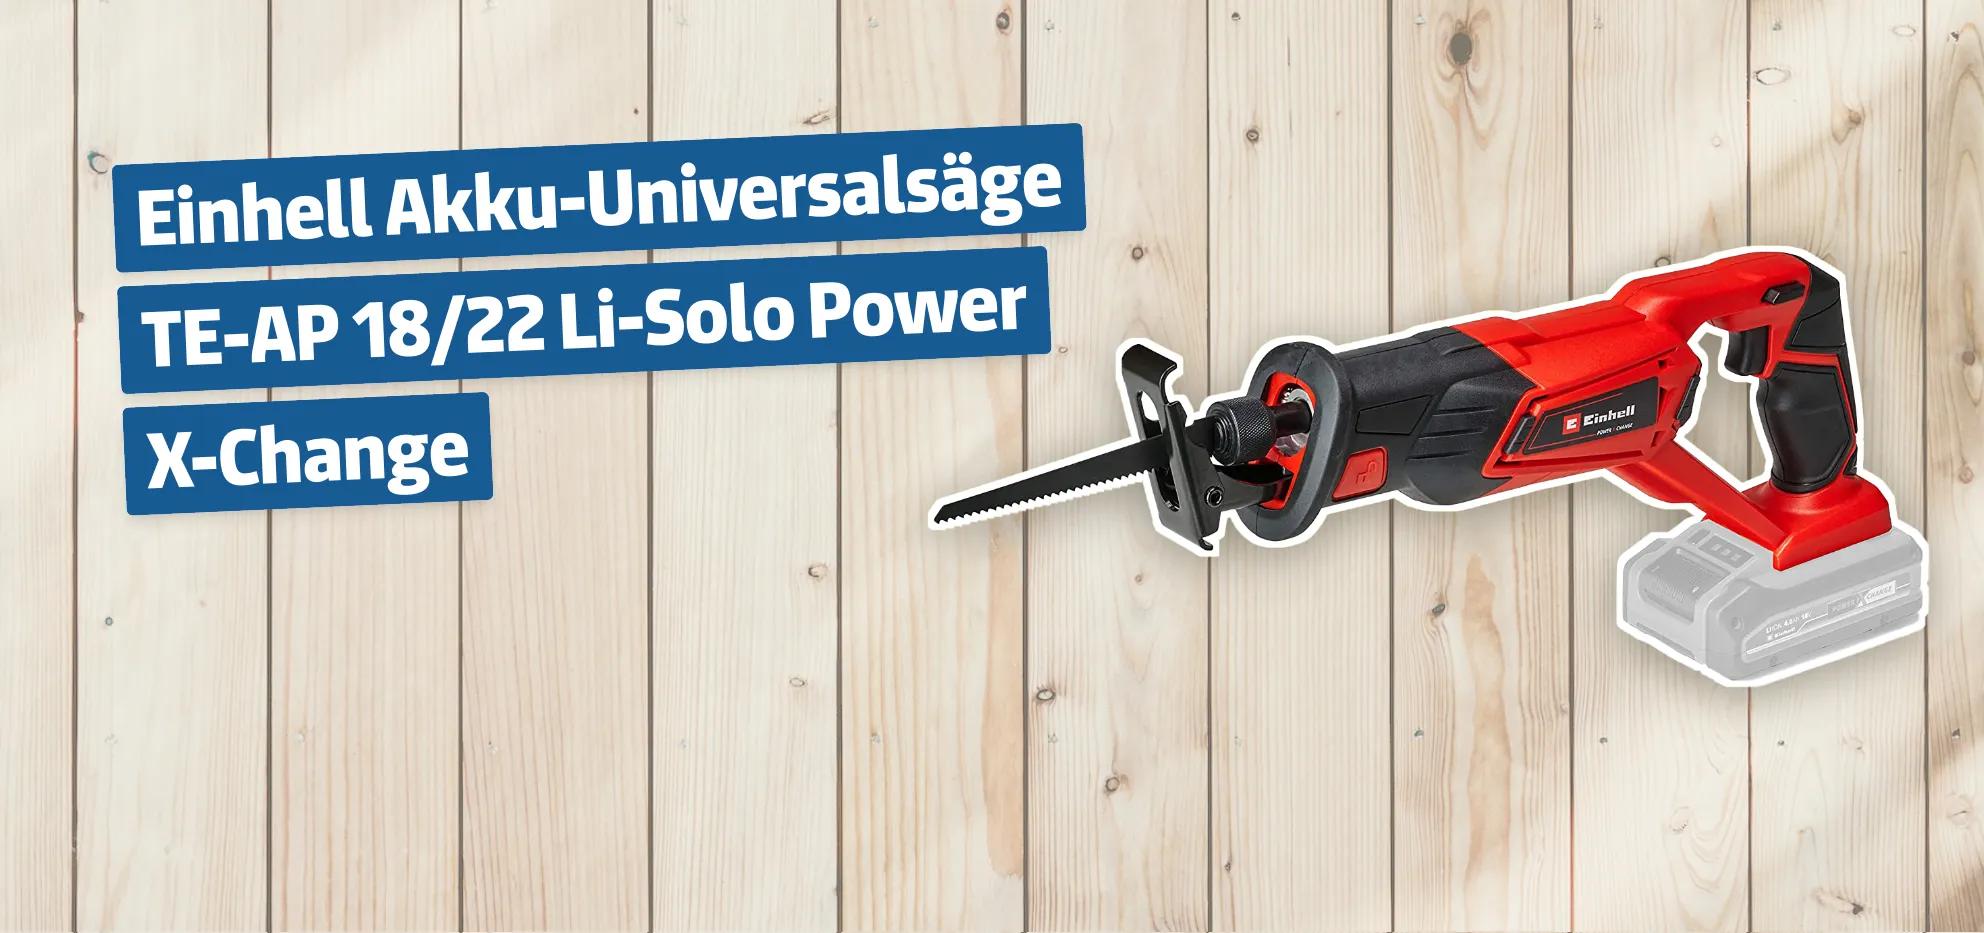 Einhell Akku-Universalsäge TE-AP 18/22 Li-Solo Power X-Change